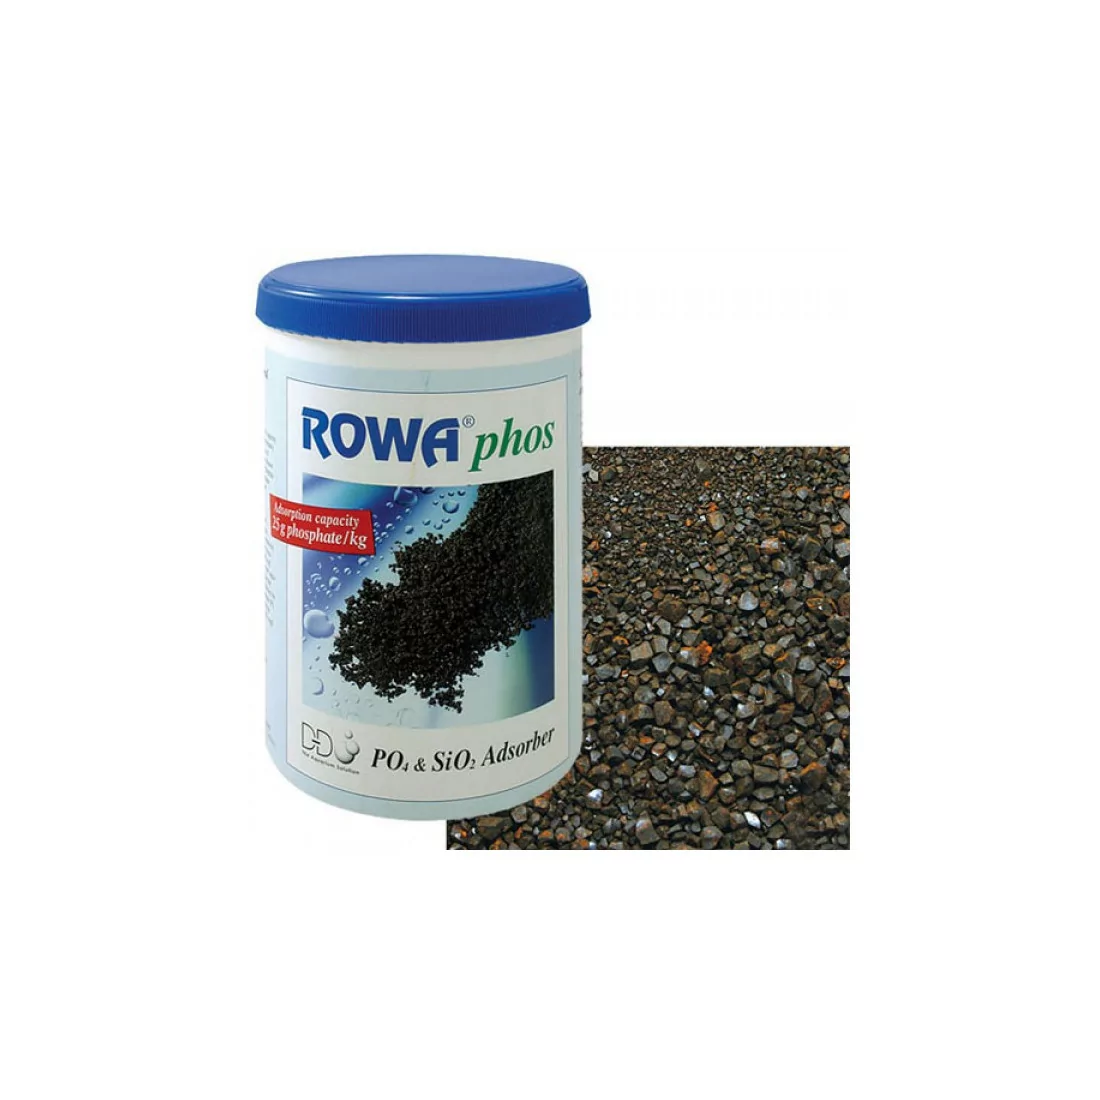 ROWAphos (résine anti phosphates)